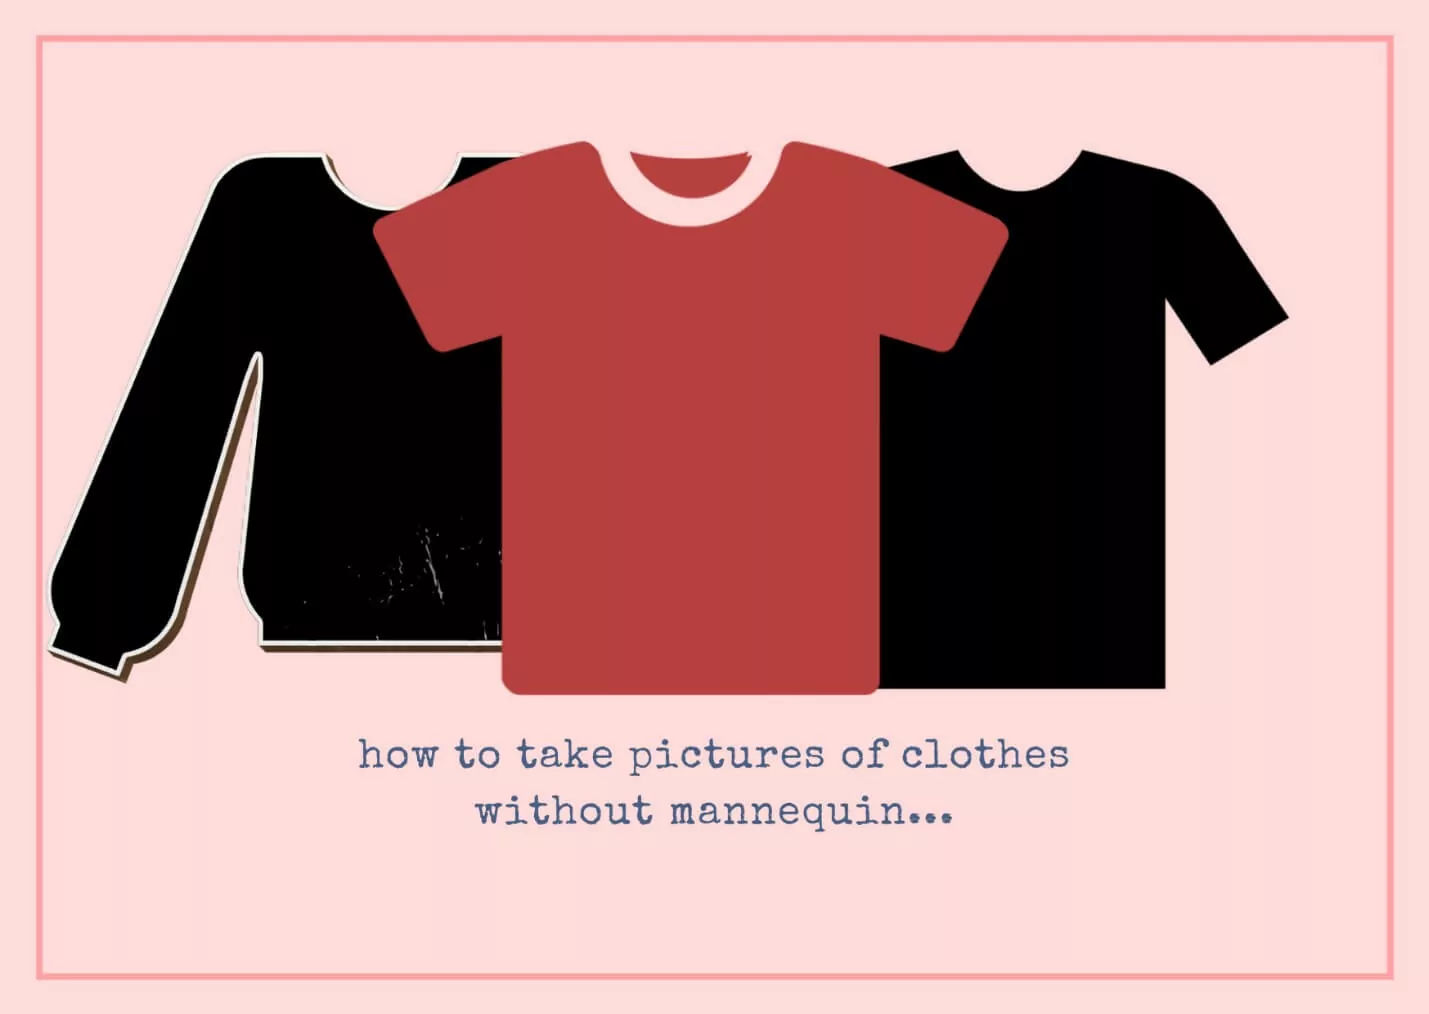 كيف تلتقط صورا لملابس بدون عارضة أزياء؟ الصورة المميزة